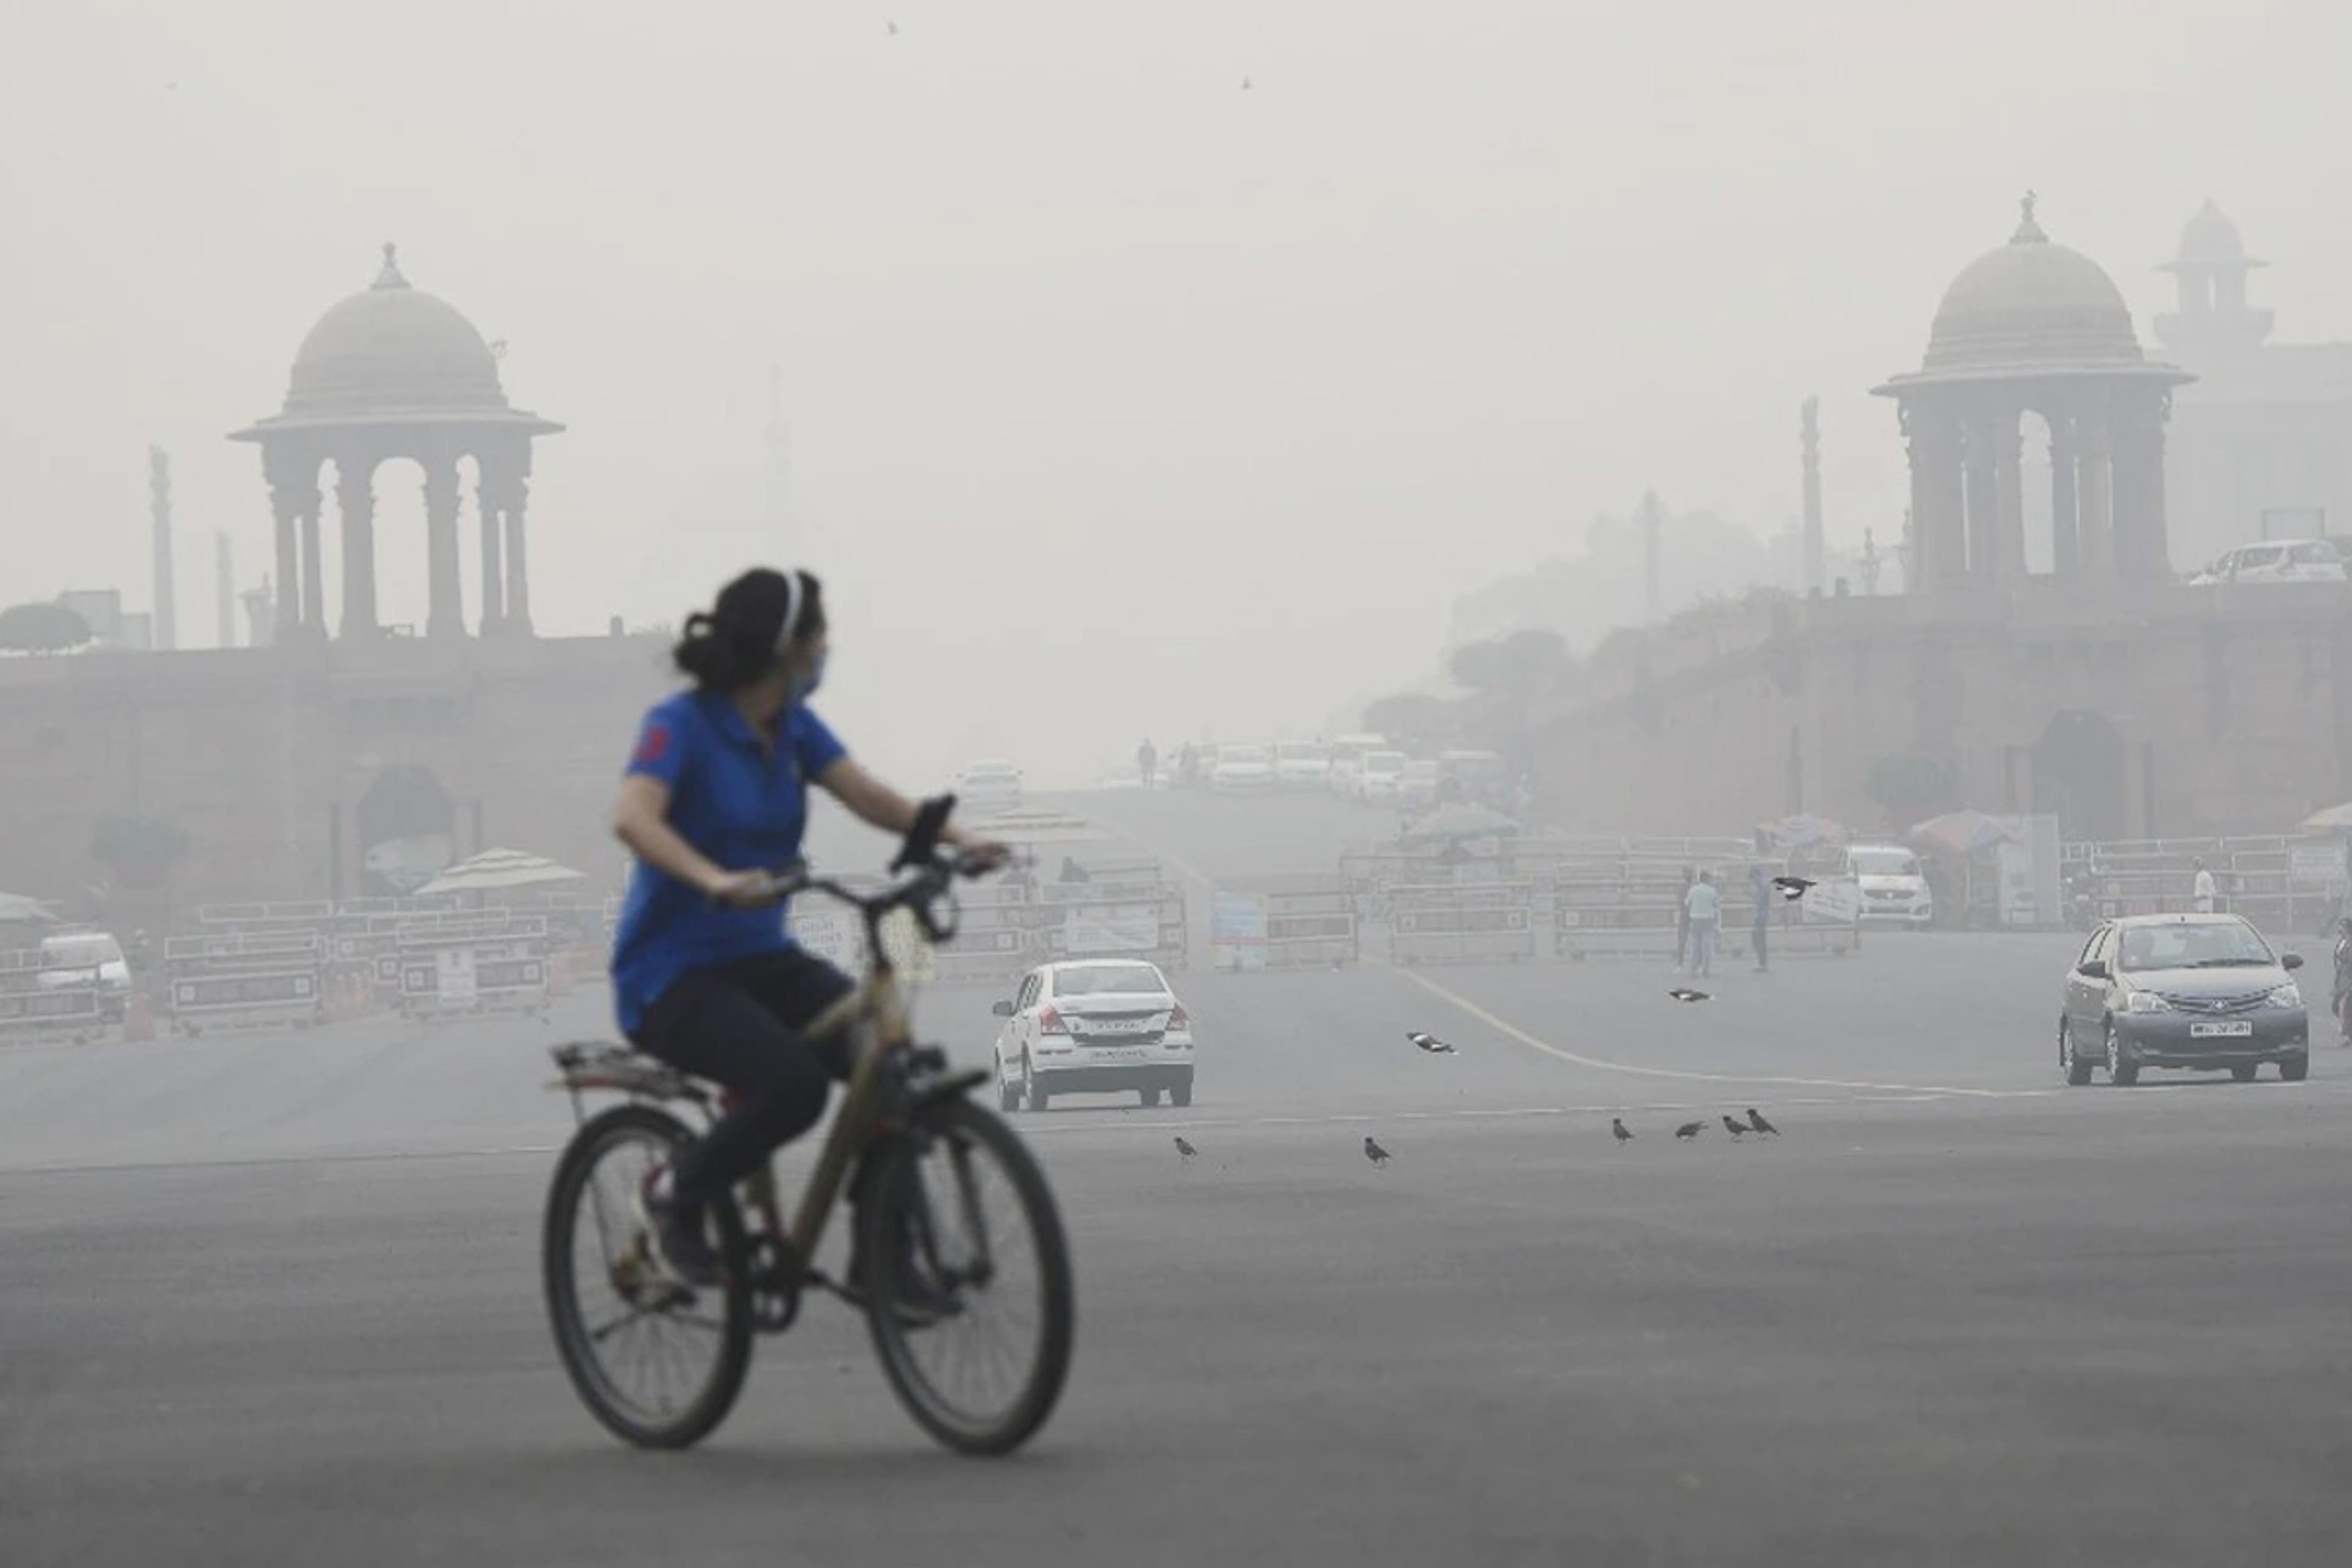 वायु प्रदूषण कम करें, डायबिटीज को मात दें: डॉक्टरों का दावा, प्रदूषण से बढ़ रहा
मधुमेह